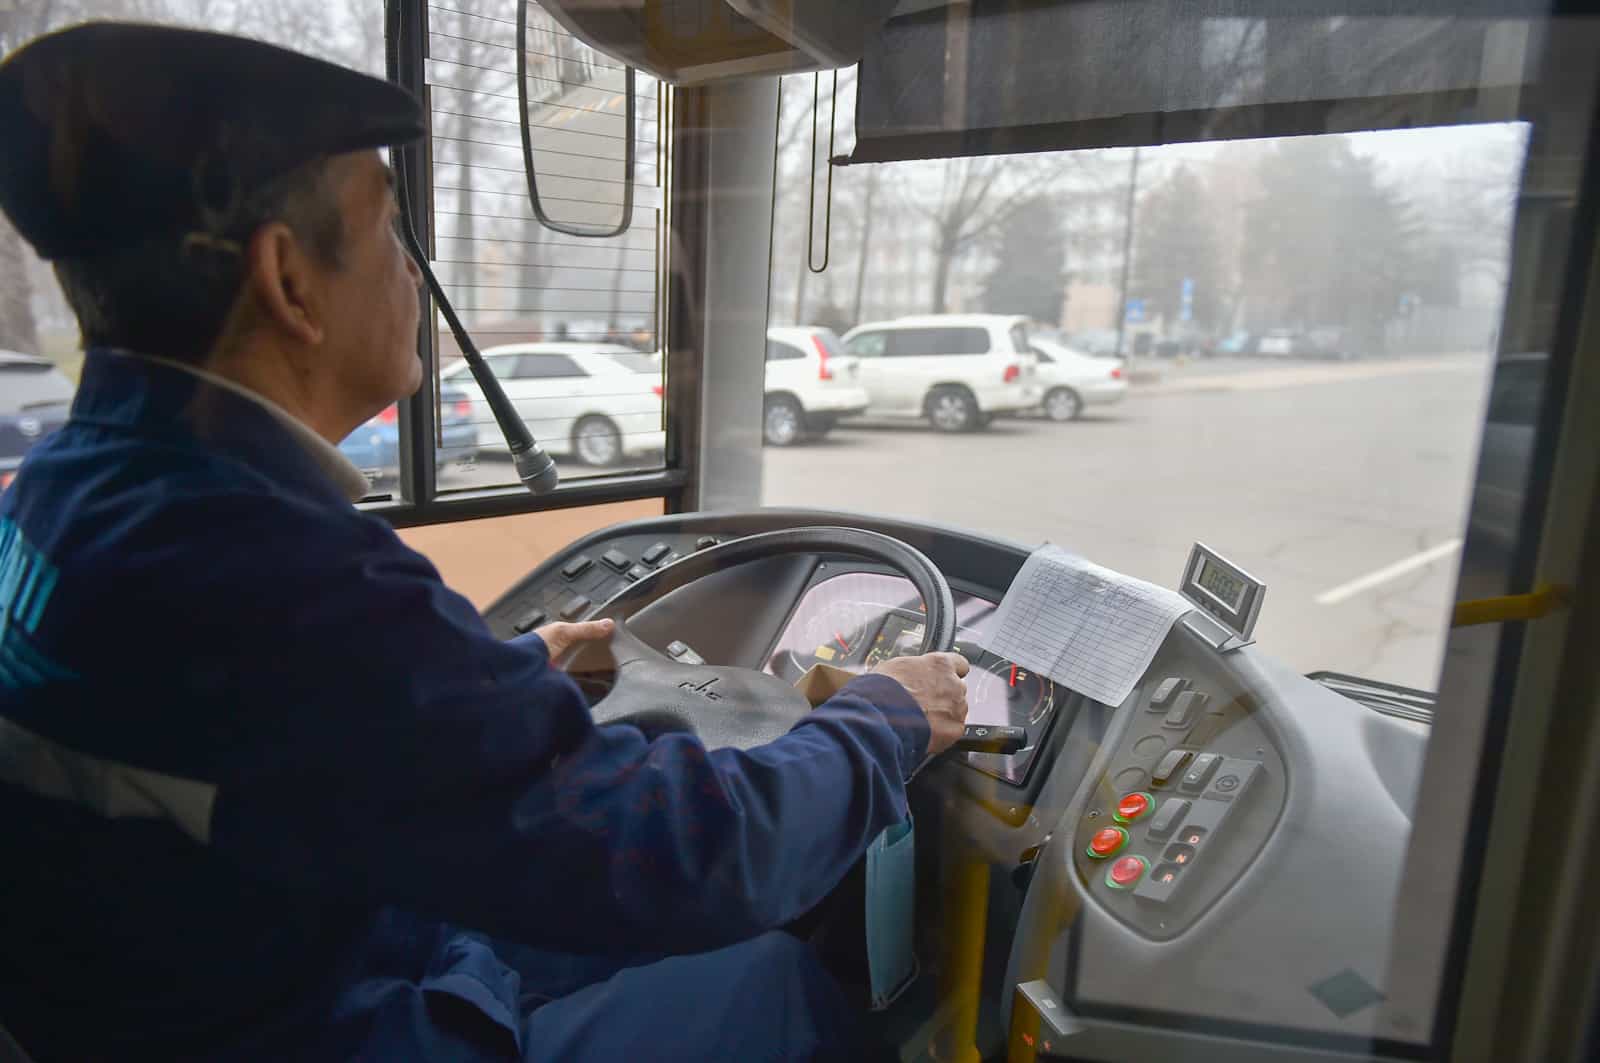 Мэрия Бишкека обсуждает повышение тарифа на проезд до 15 сомов и выше